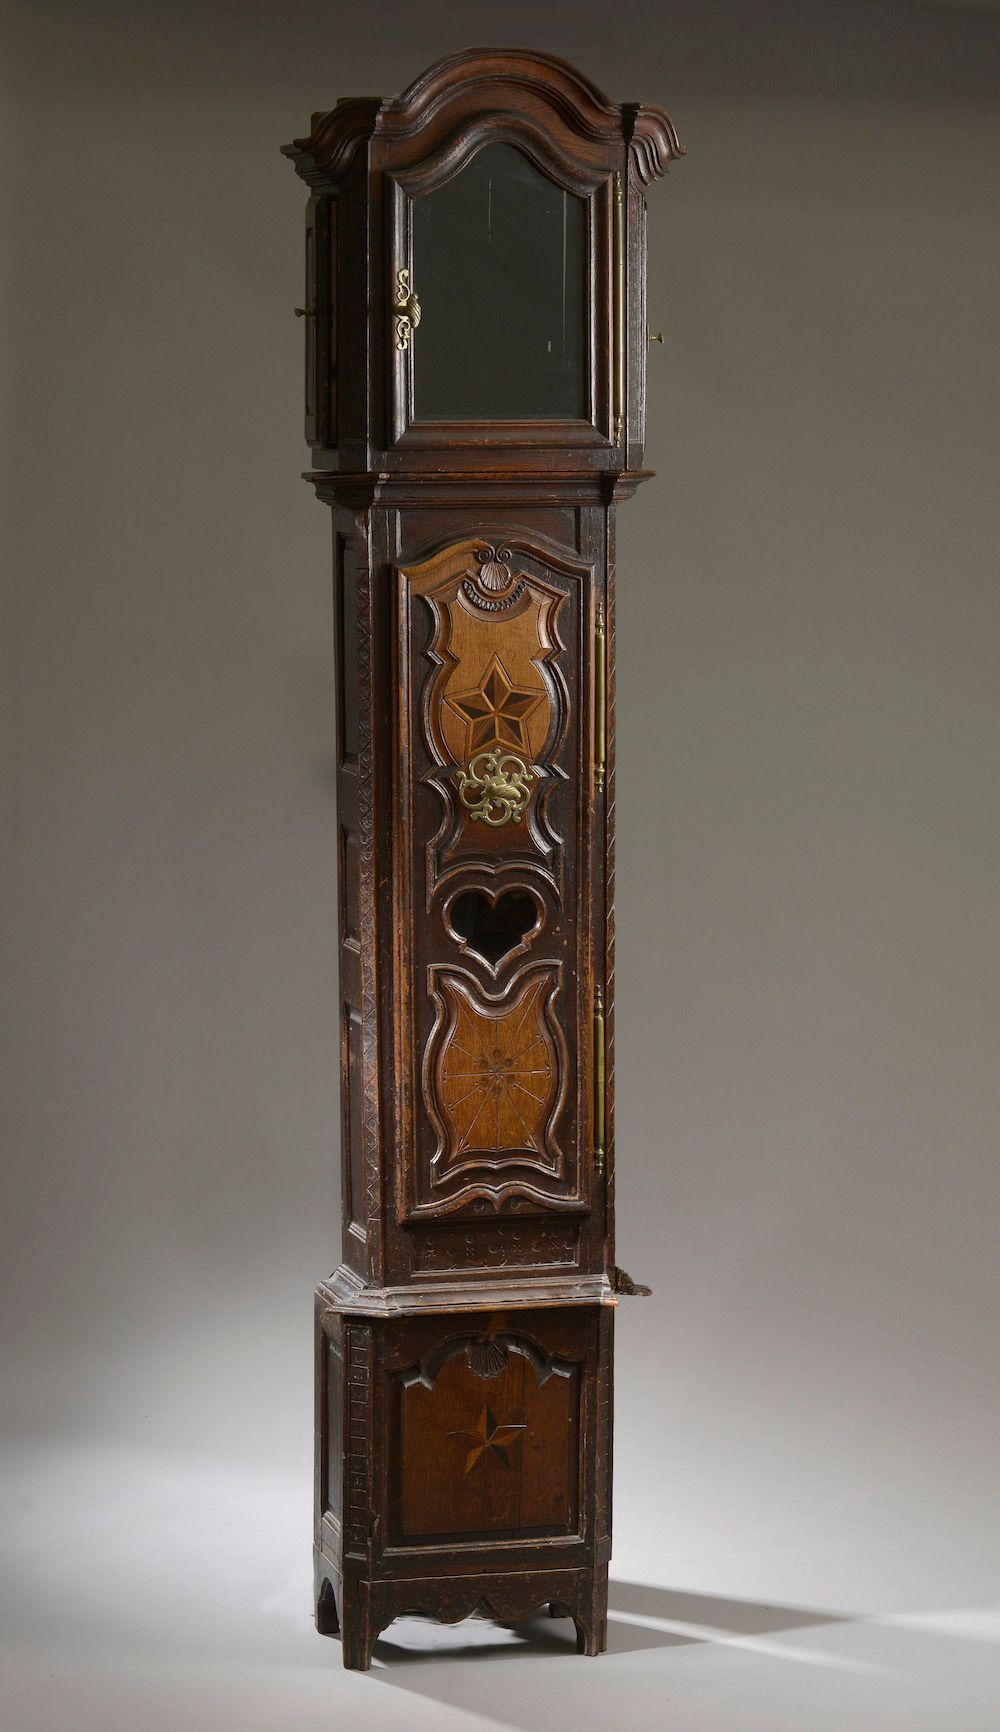 Null 橡木和镶嵌地板钟，中间有大型模子（缺失）。

东方作品，19世纪。

身高：234厘米234 cm - 宽度 : 54 cm - 深度 : 26 cm